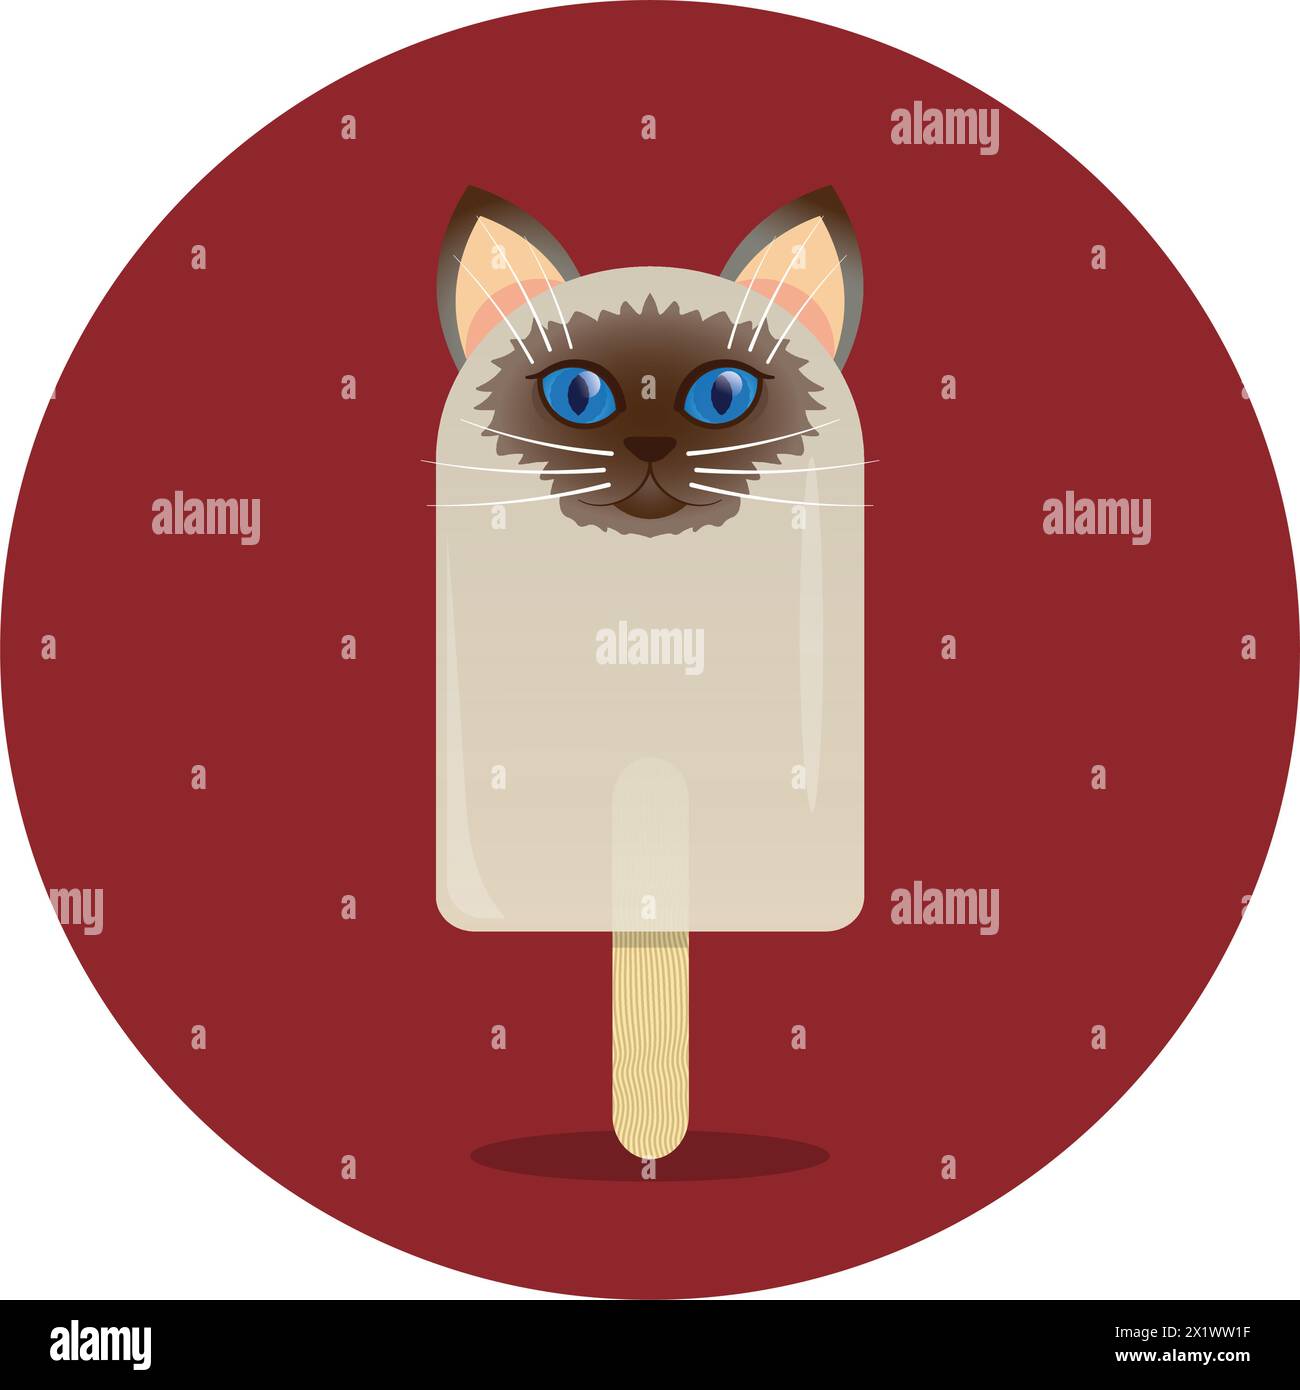 popsicle en forme de chat, agrémenté d'yeux noisette, apportant une touche amusante à cette friandise estivale classique Illustration de Vecteur